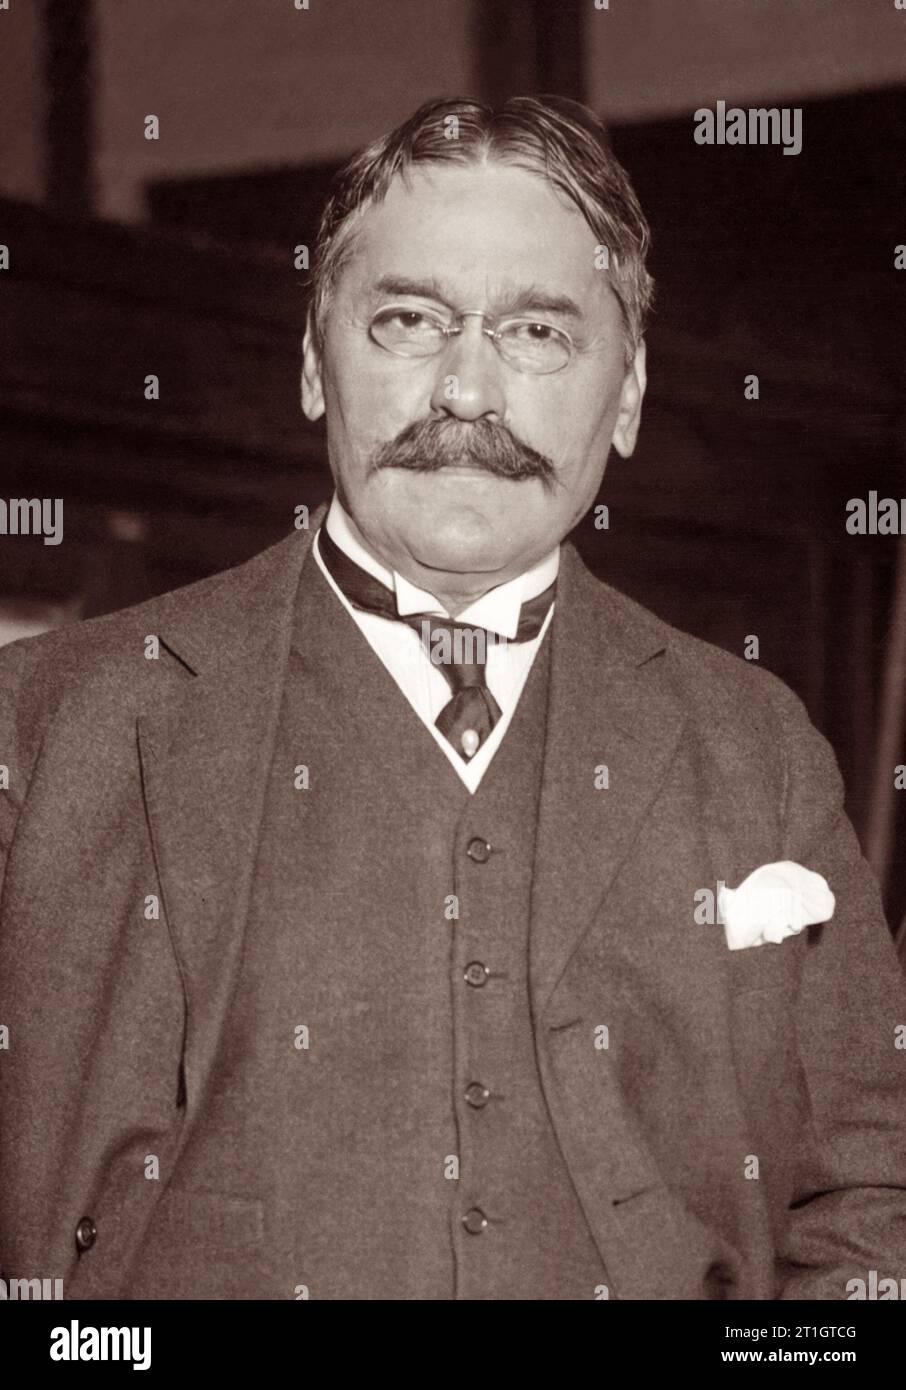 Lo scienziato serbo Mihaljo Idvorski Pupin (1858-1935) è stato professore alla Columbia University, membro fondatore della NACA (il predecessore della NASA), filantropo e inventore scientifico titolare di numerosi brevetti. Foto Stock